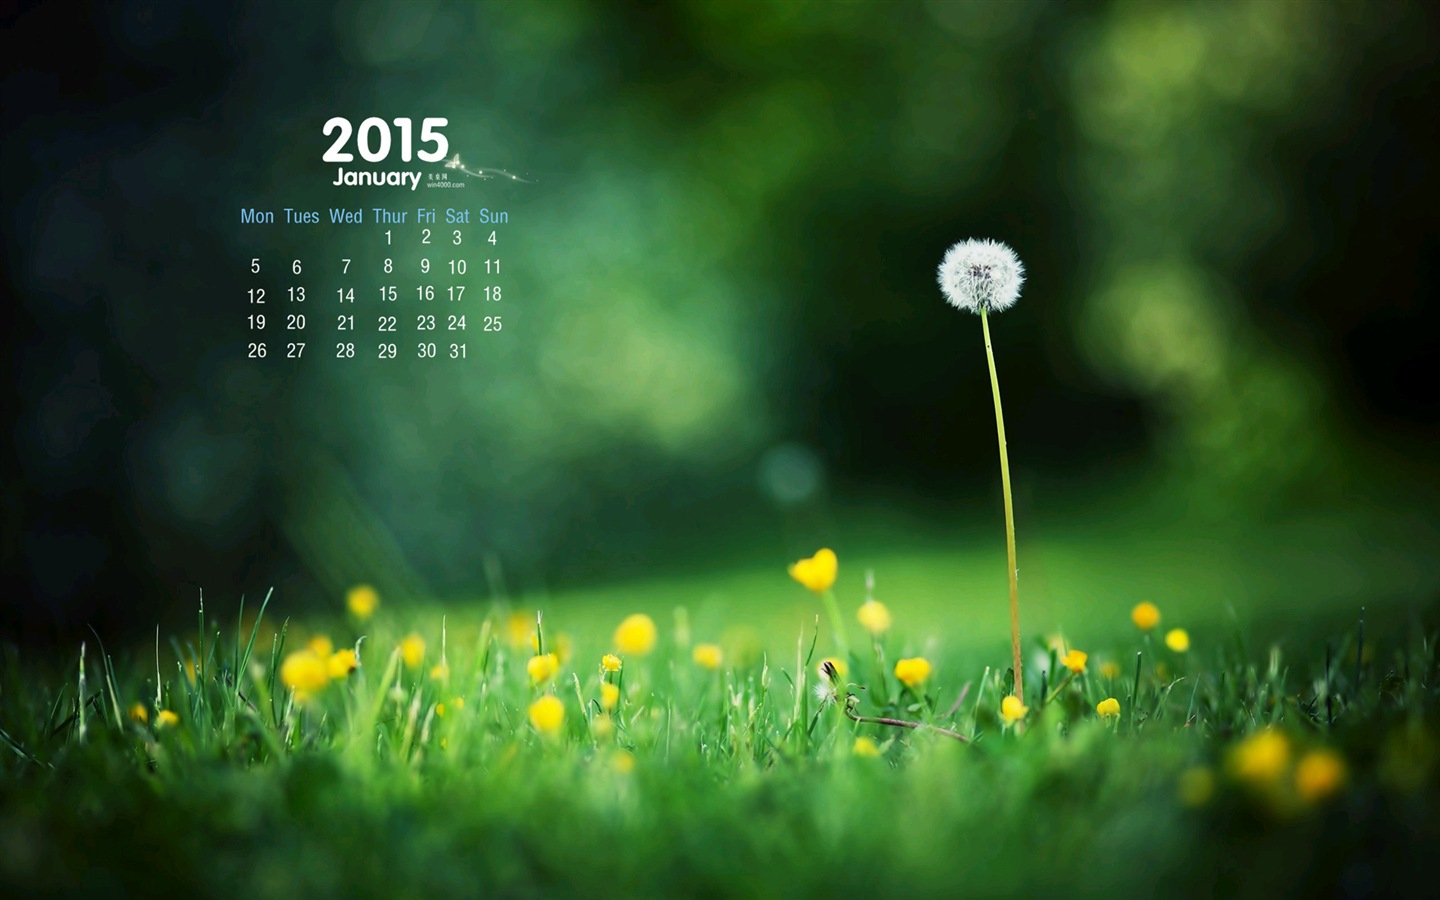 01 2015 fondos de escritorio calendario (1) #15 - 1440x900